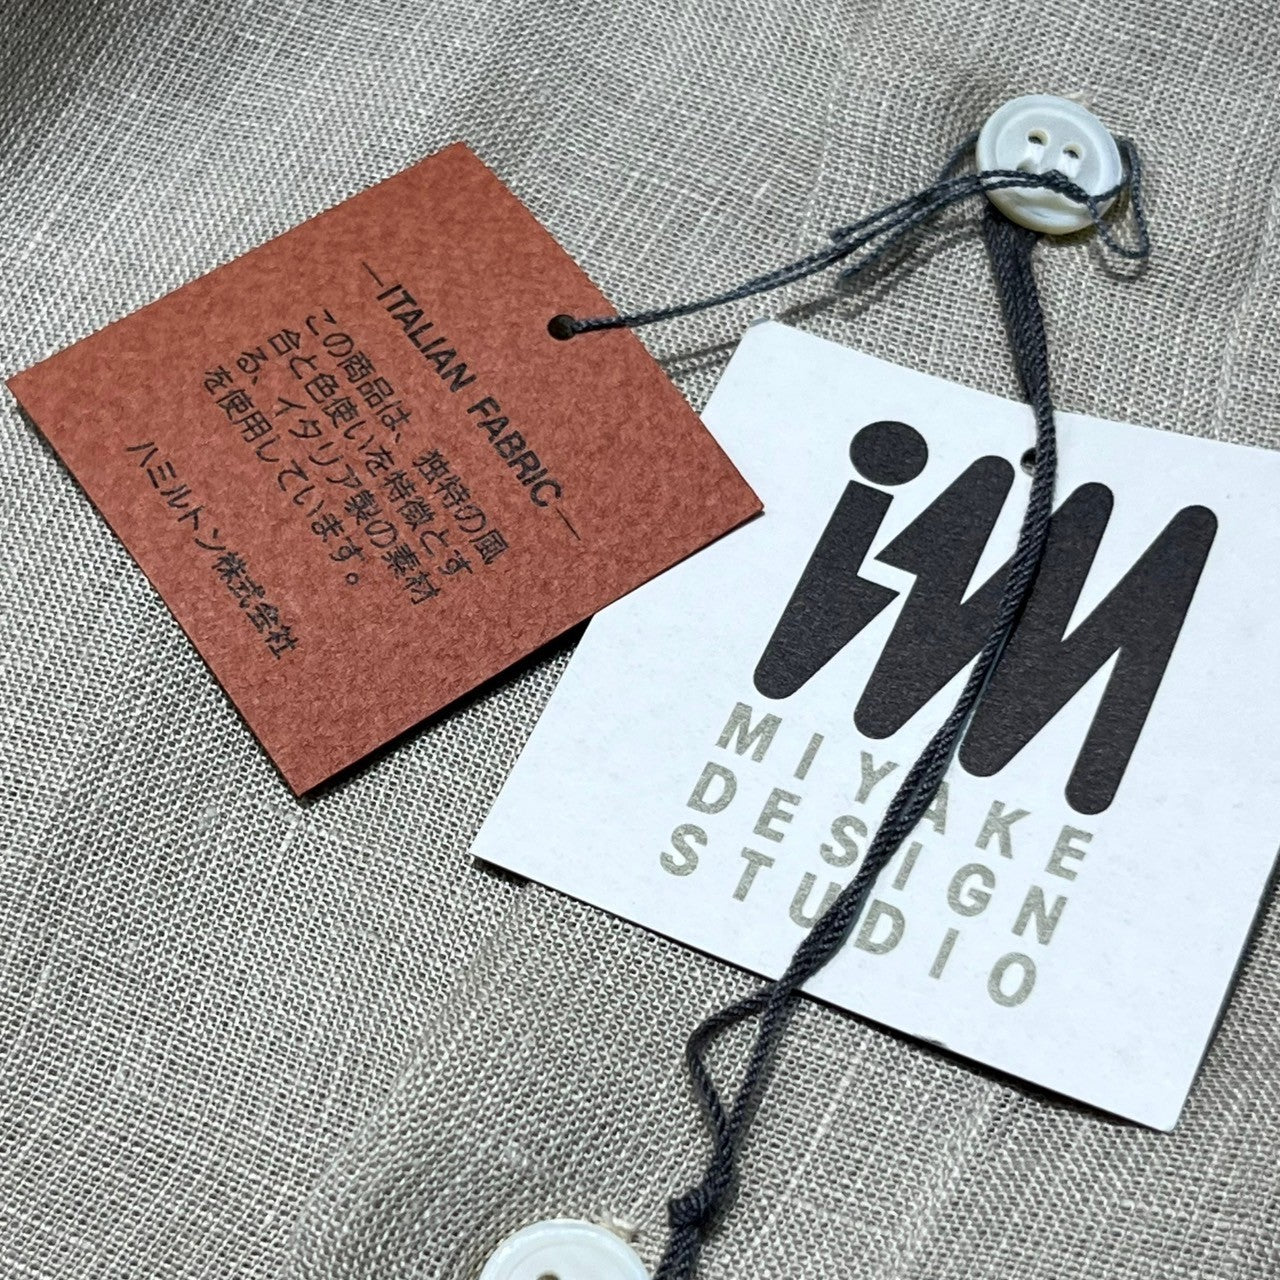 MIYAKE DESIGN STUDIO(ミヤケデザインスタジオ) 80’s ~ 90’s band collar rayon shirt バンドカラー レーヨン シャツ ハミルトン社製 IMMT MP3116-11 M ベージュ デッドストック イッセイミヤケ